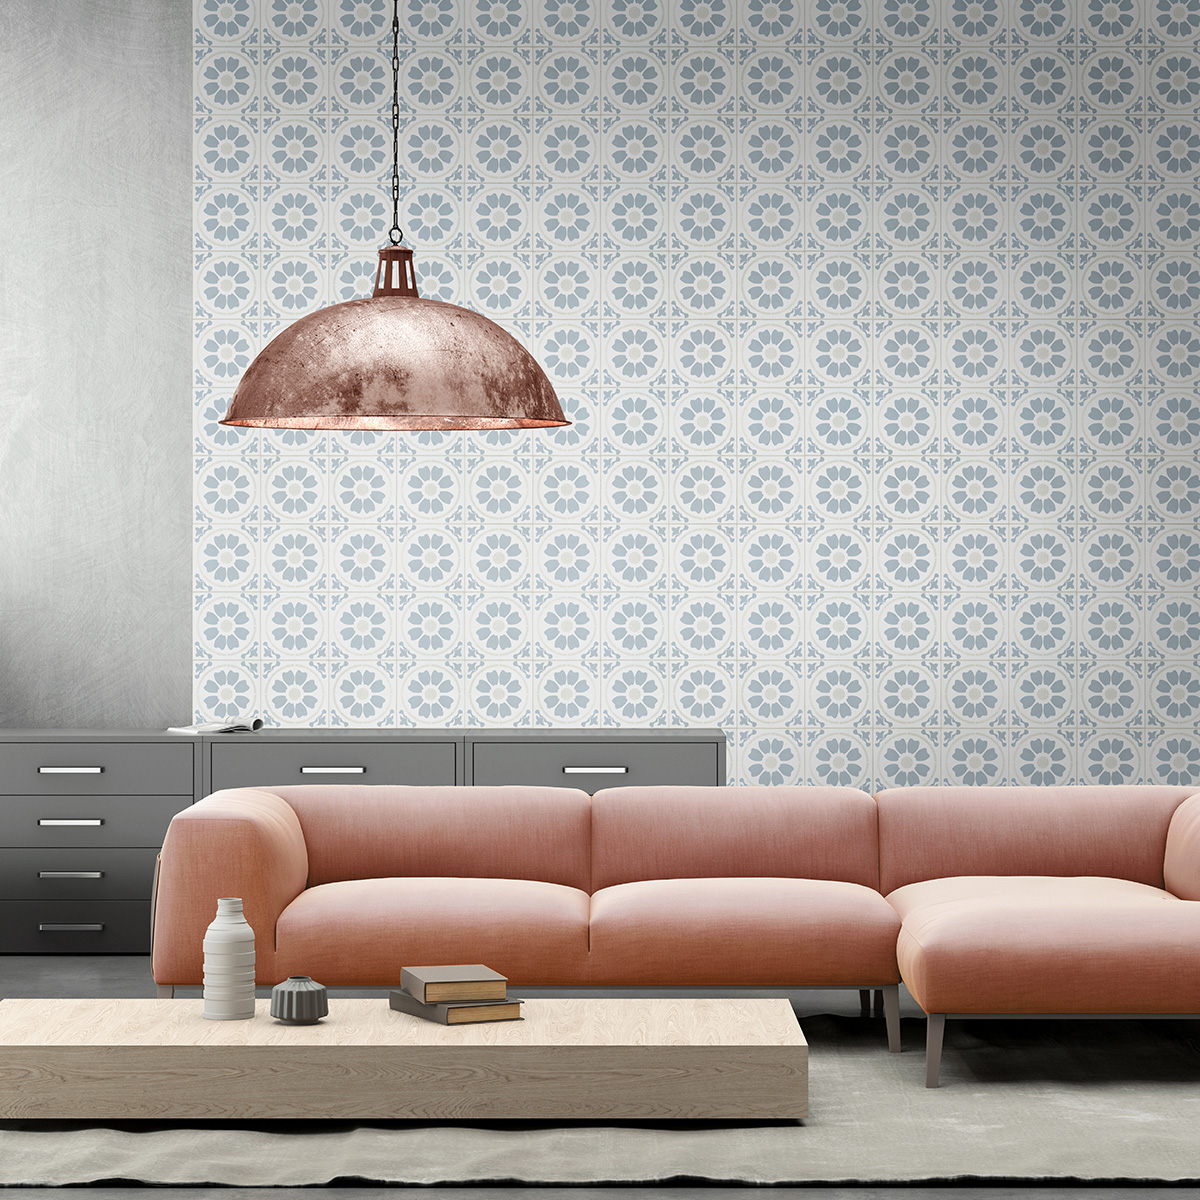 Tamensa Encaustic Tile wall in living room